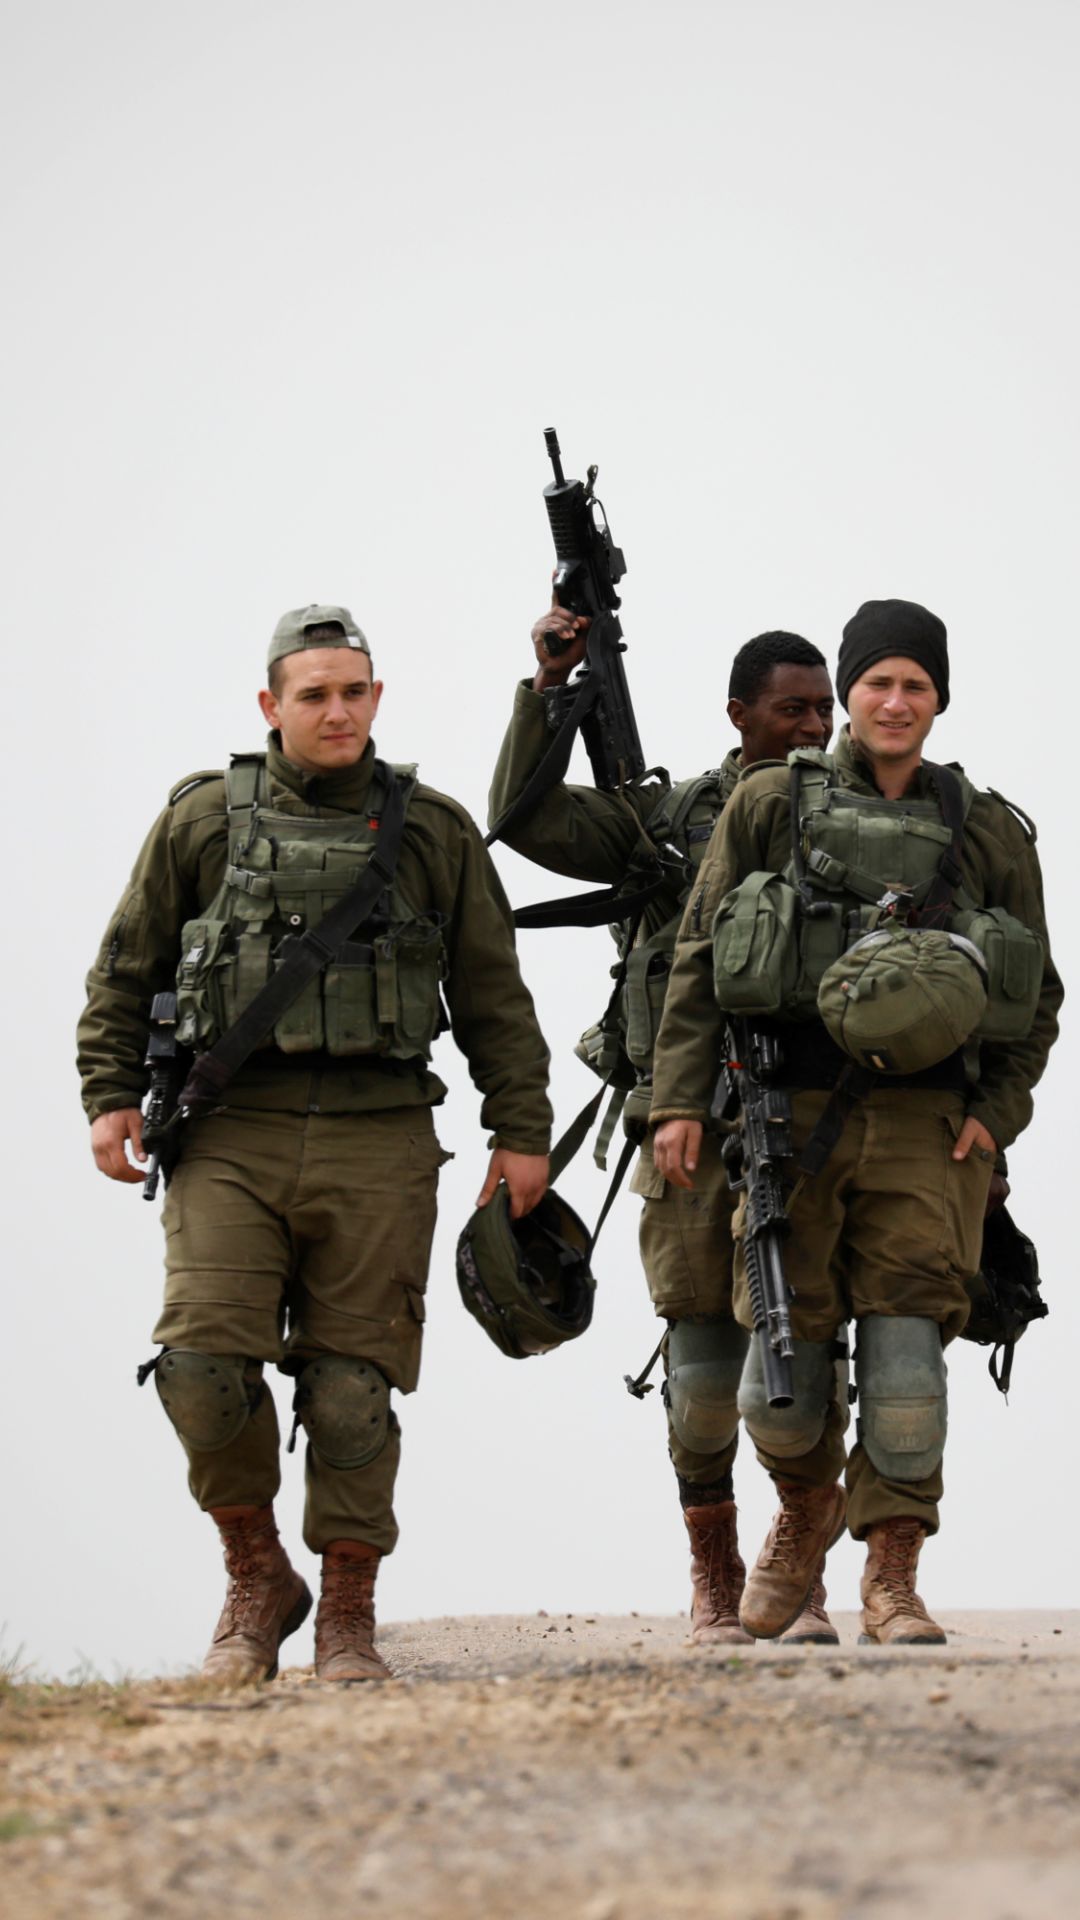 घातक है इजराइल की सेना, जानें कितना बड़ा है 'जंगी बेड़ा' 